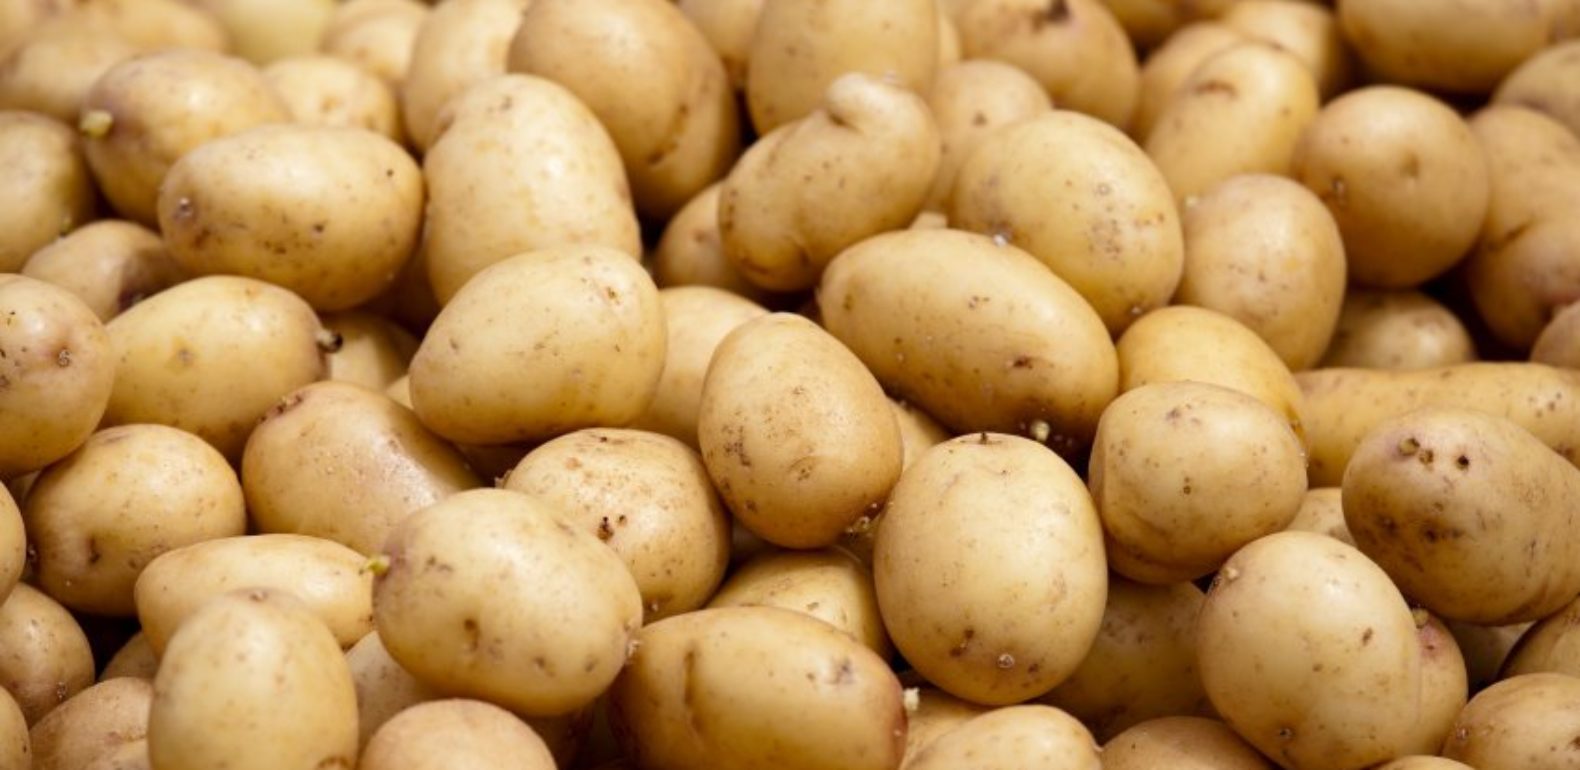 Tunisie- Importation de pommes de terre, suite à la chute de la production en Tunisie